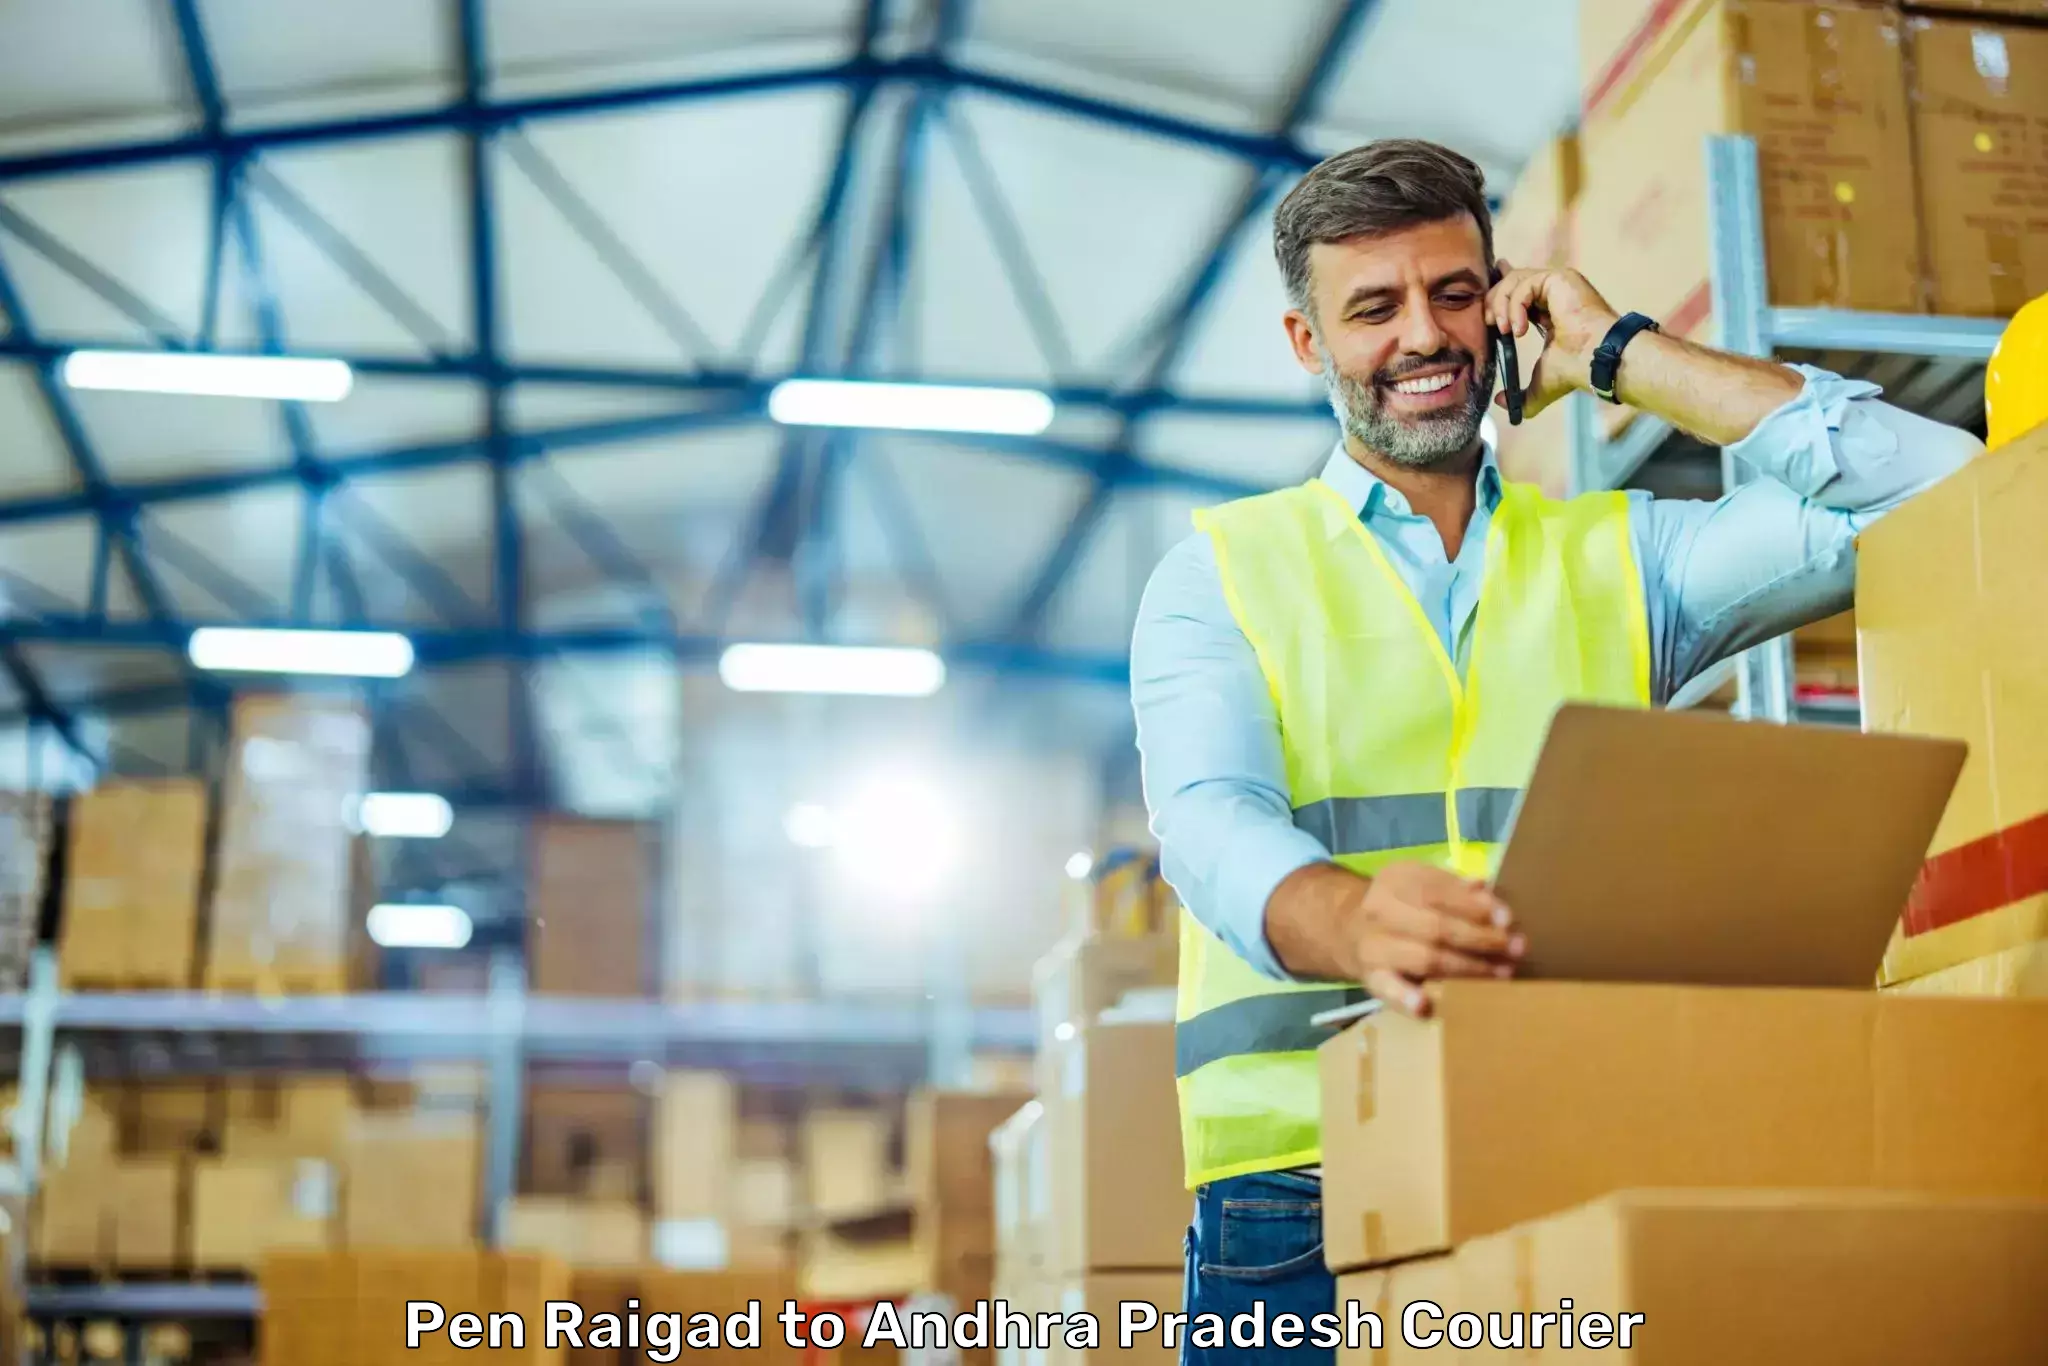 Reliable parcel services Pen Raigad to Visakhapatnam Port